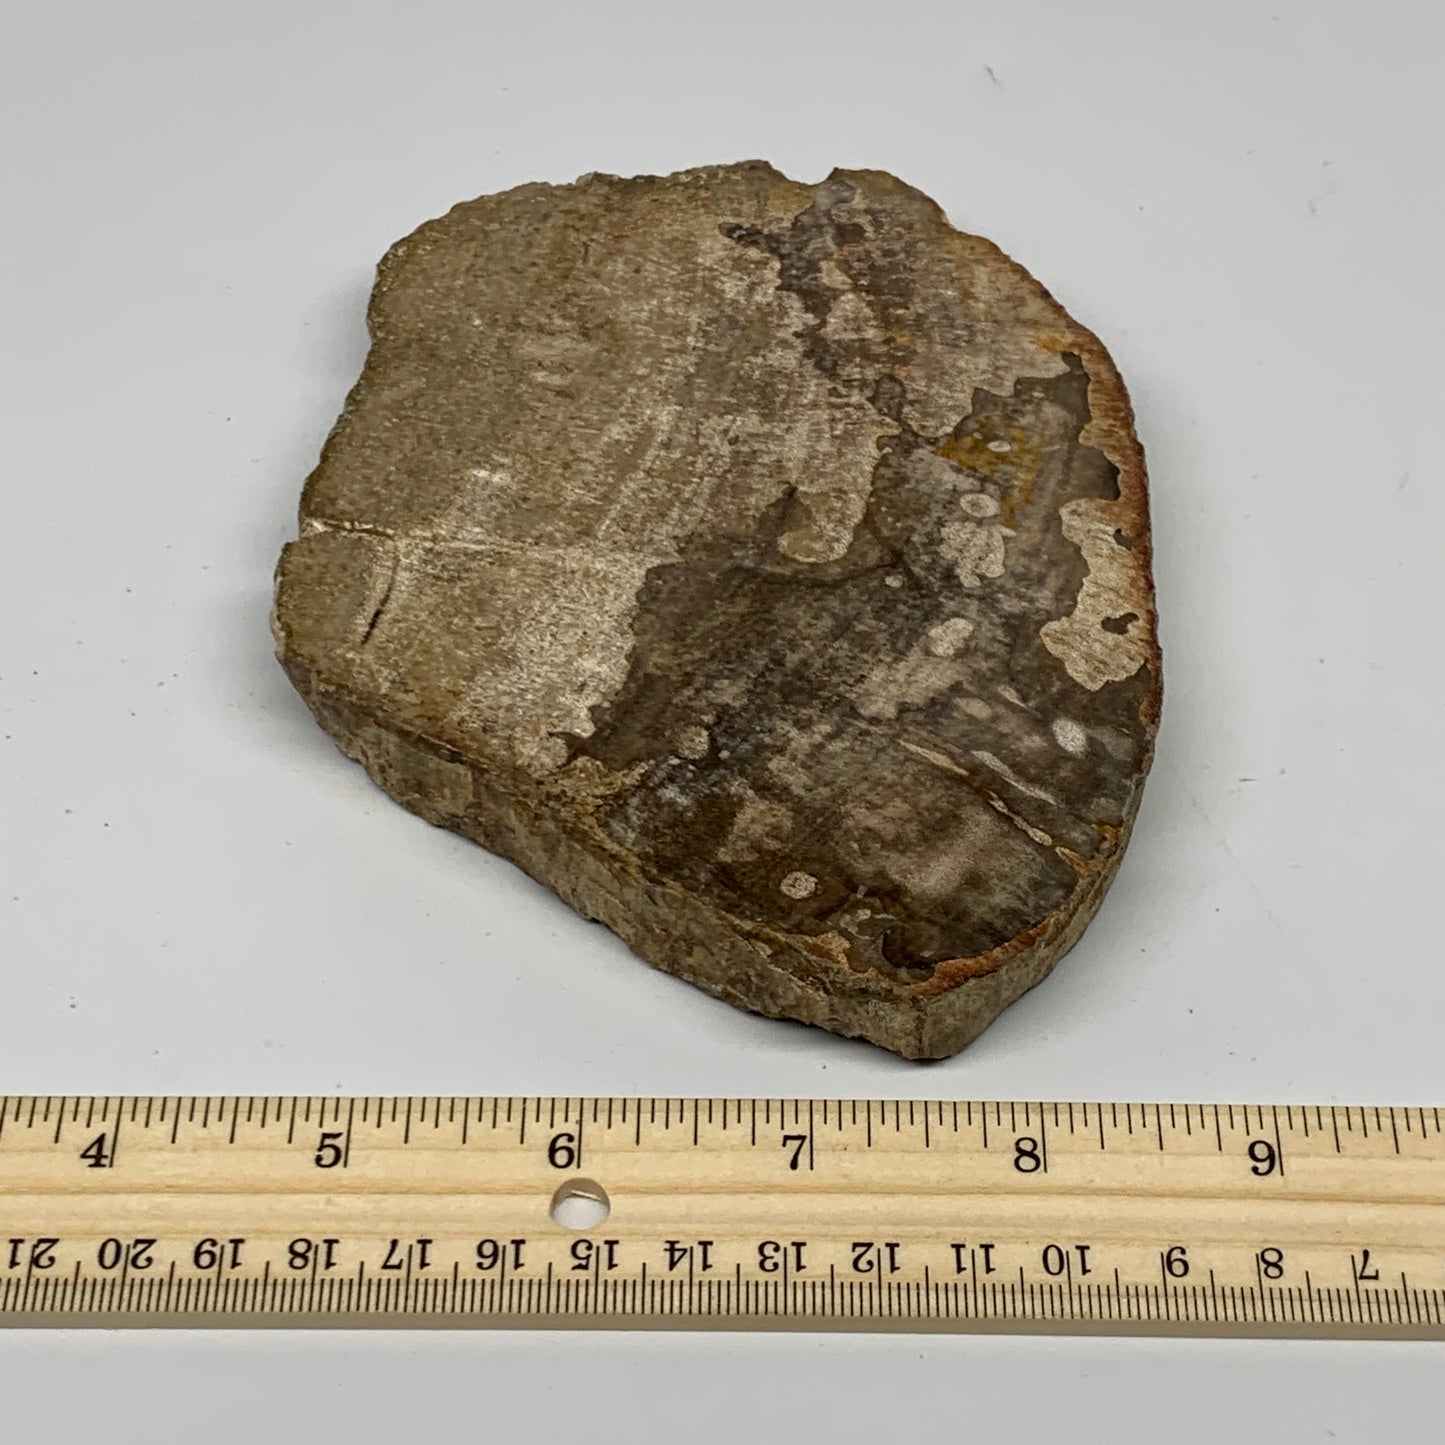 425g,5.7"x4.4"x0.7" Petrified Wood Slab Tree Branch Specimen, Minerals, B22683